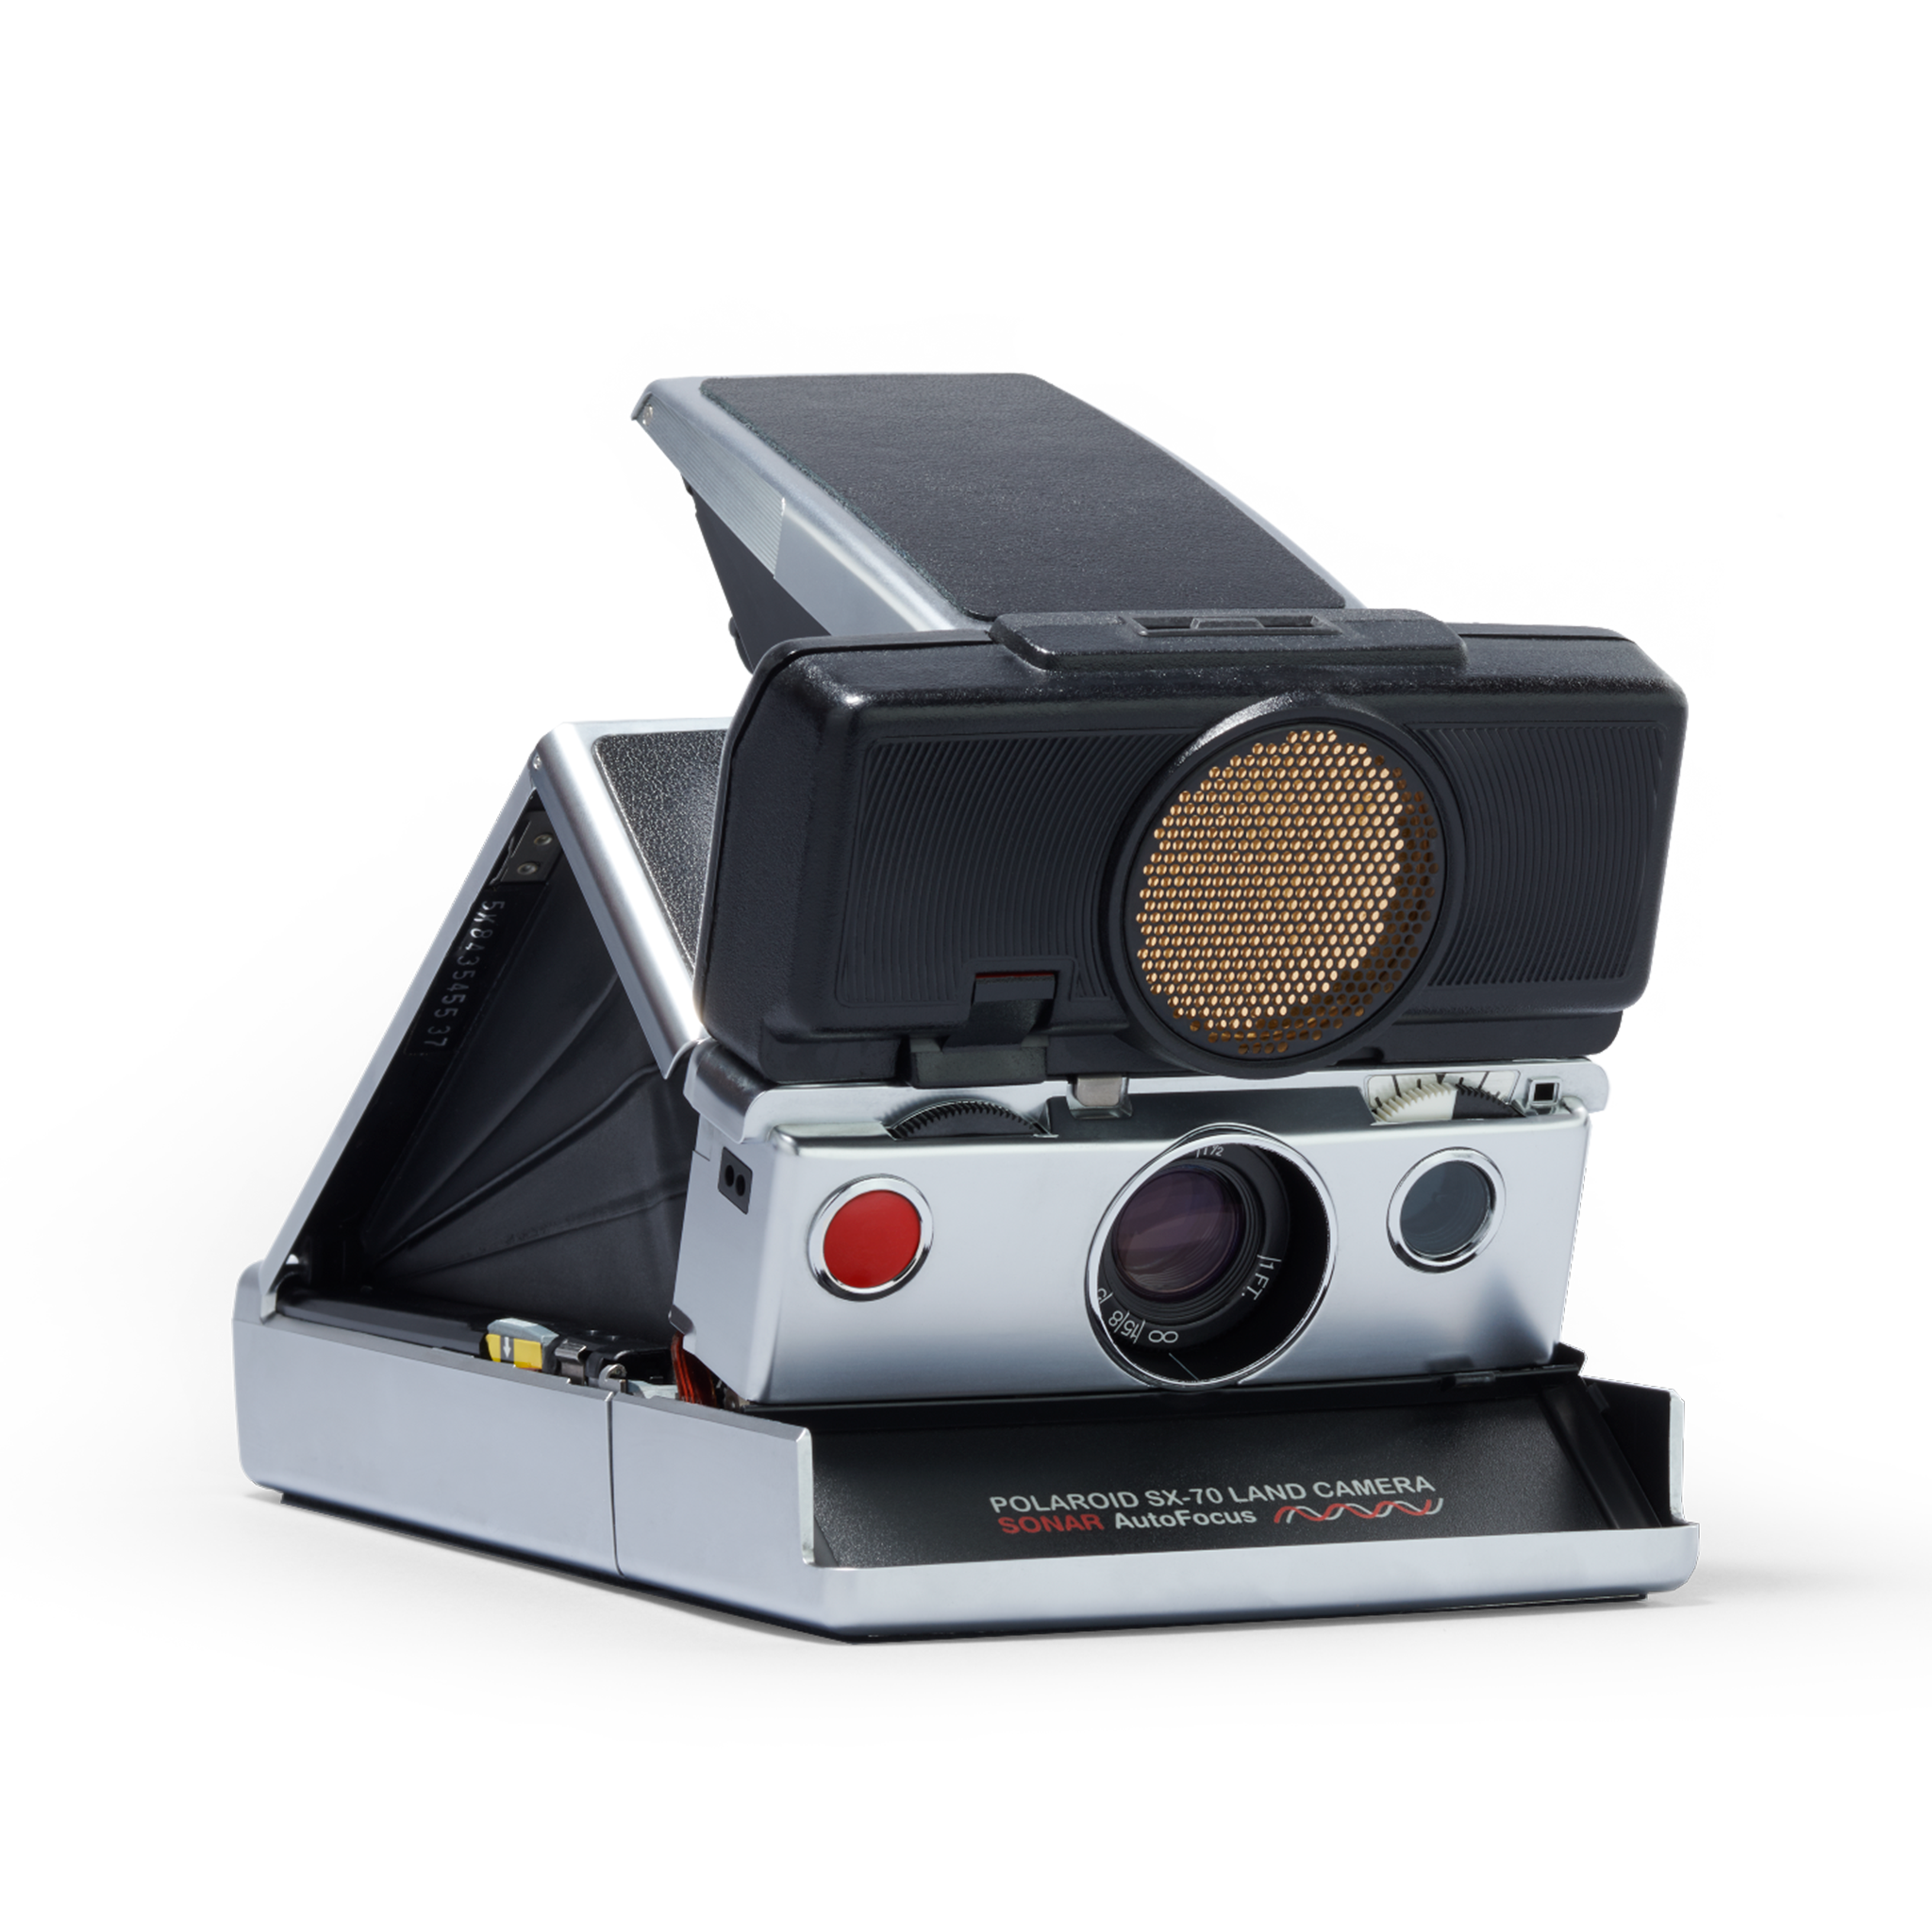 Polaroid SX-70 Autofocus Instant Camera